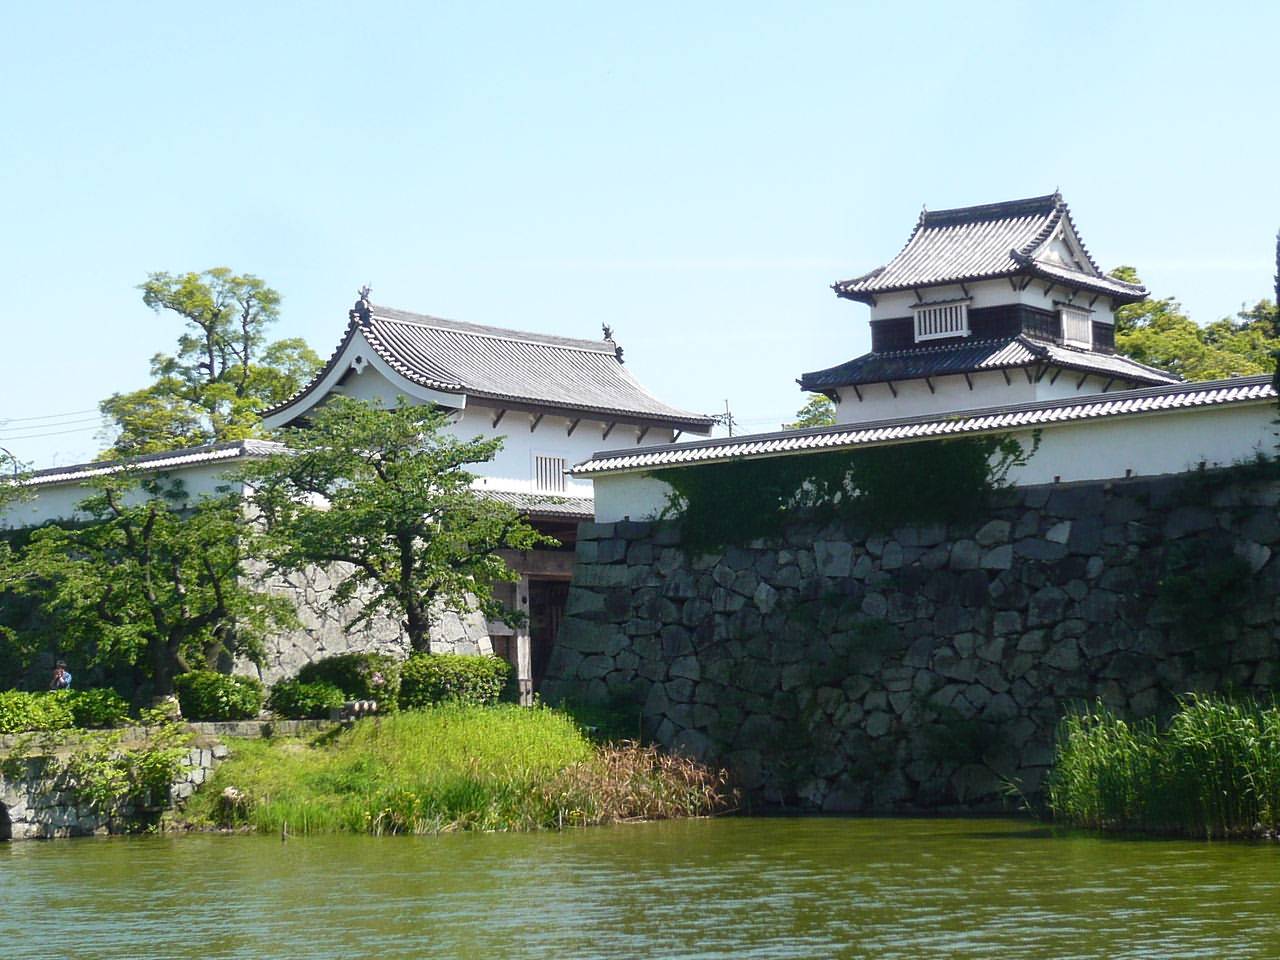 The ruins of Fukuoka Castle